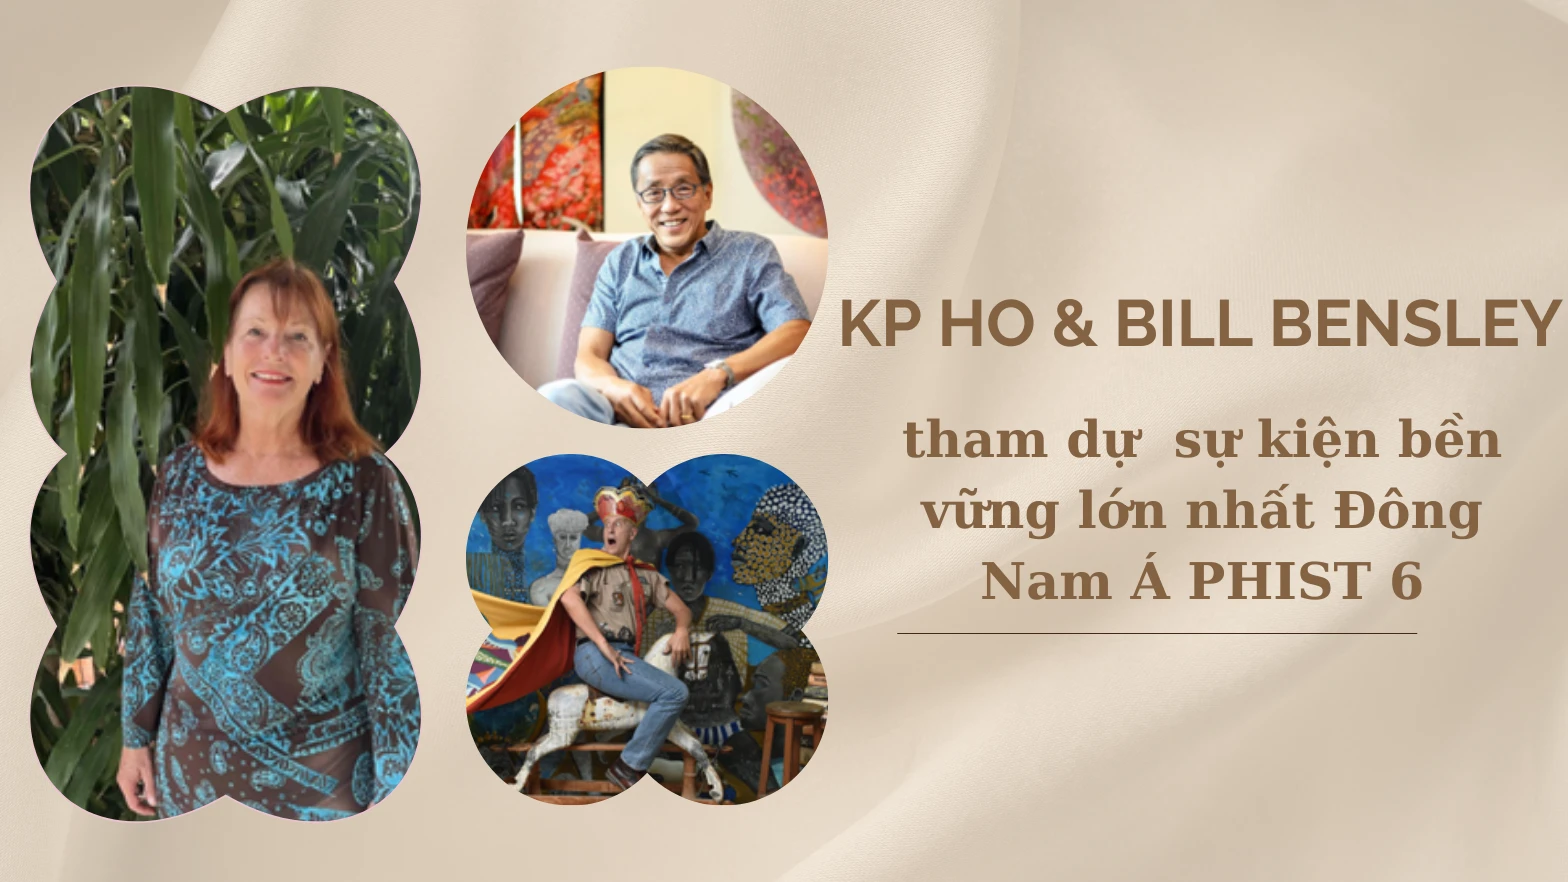 KP Ho và Bill Bensley - Hai nhà đổi mới huyền thoại ngành du lịch - tham dự PHIST 6, sự kiện bền vững lớn nhất Đông Nam Á